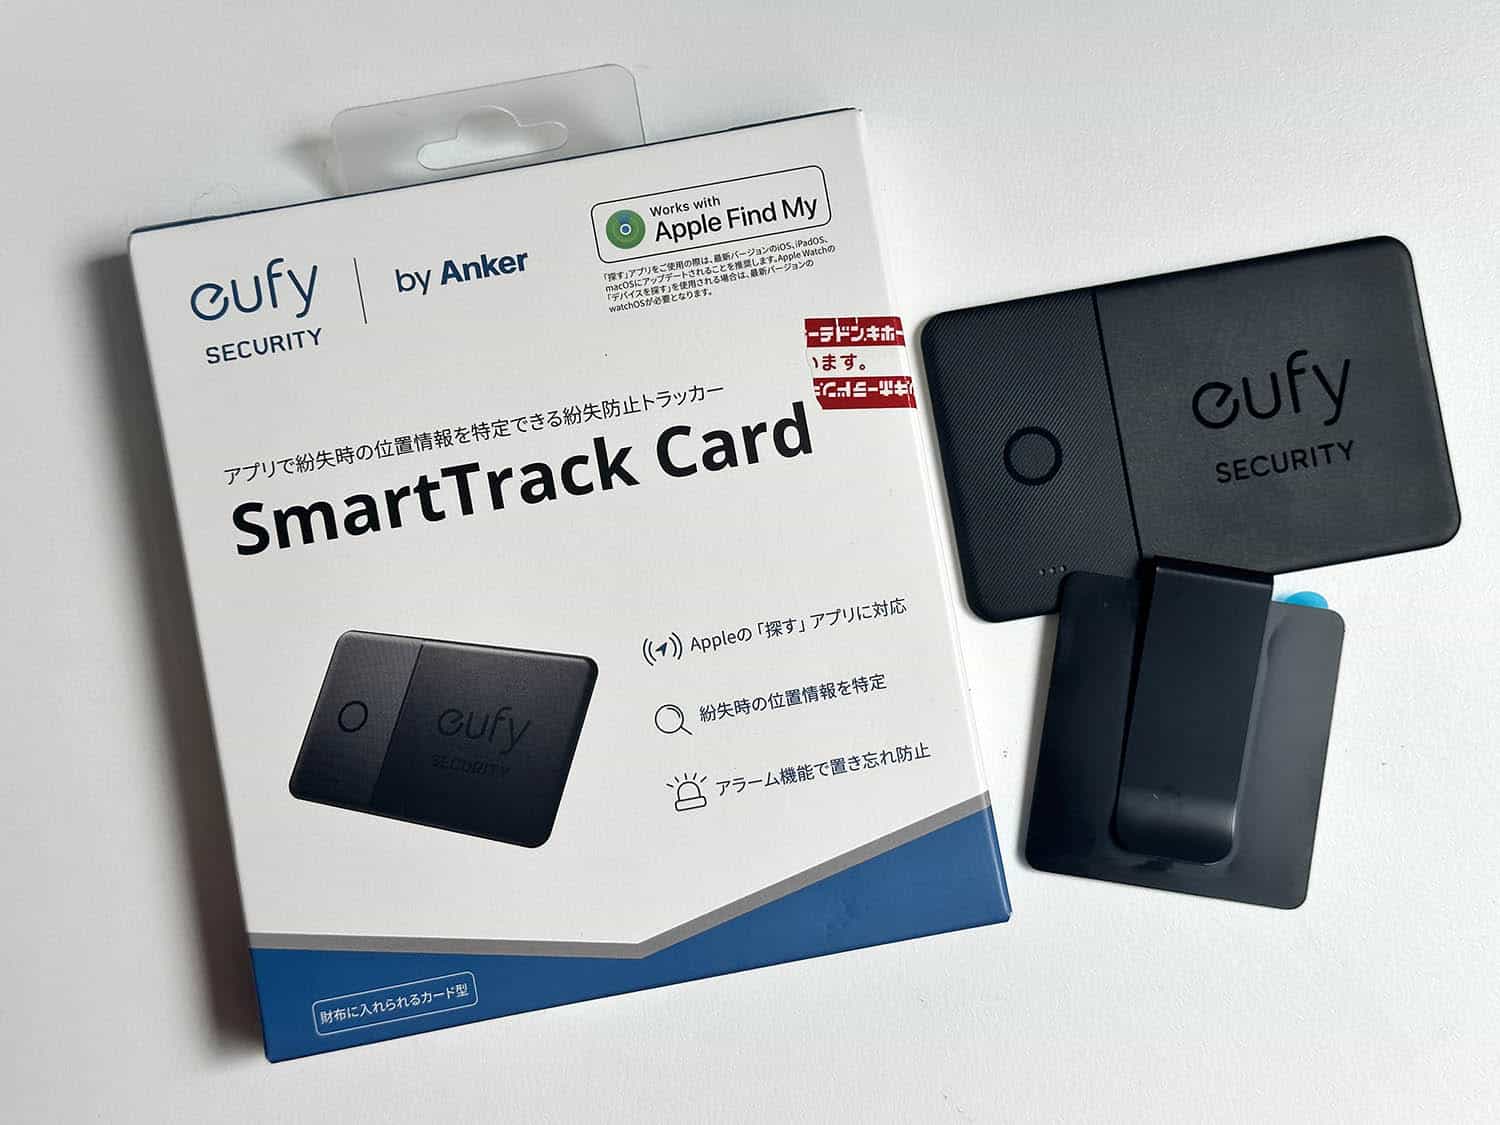 Eufy SmartTrack Card met verpakking